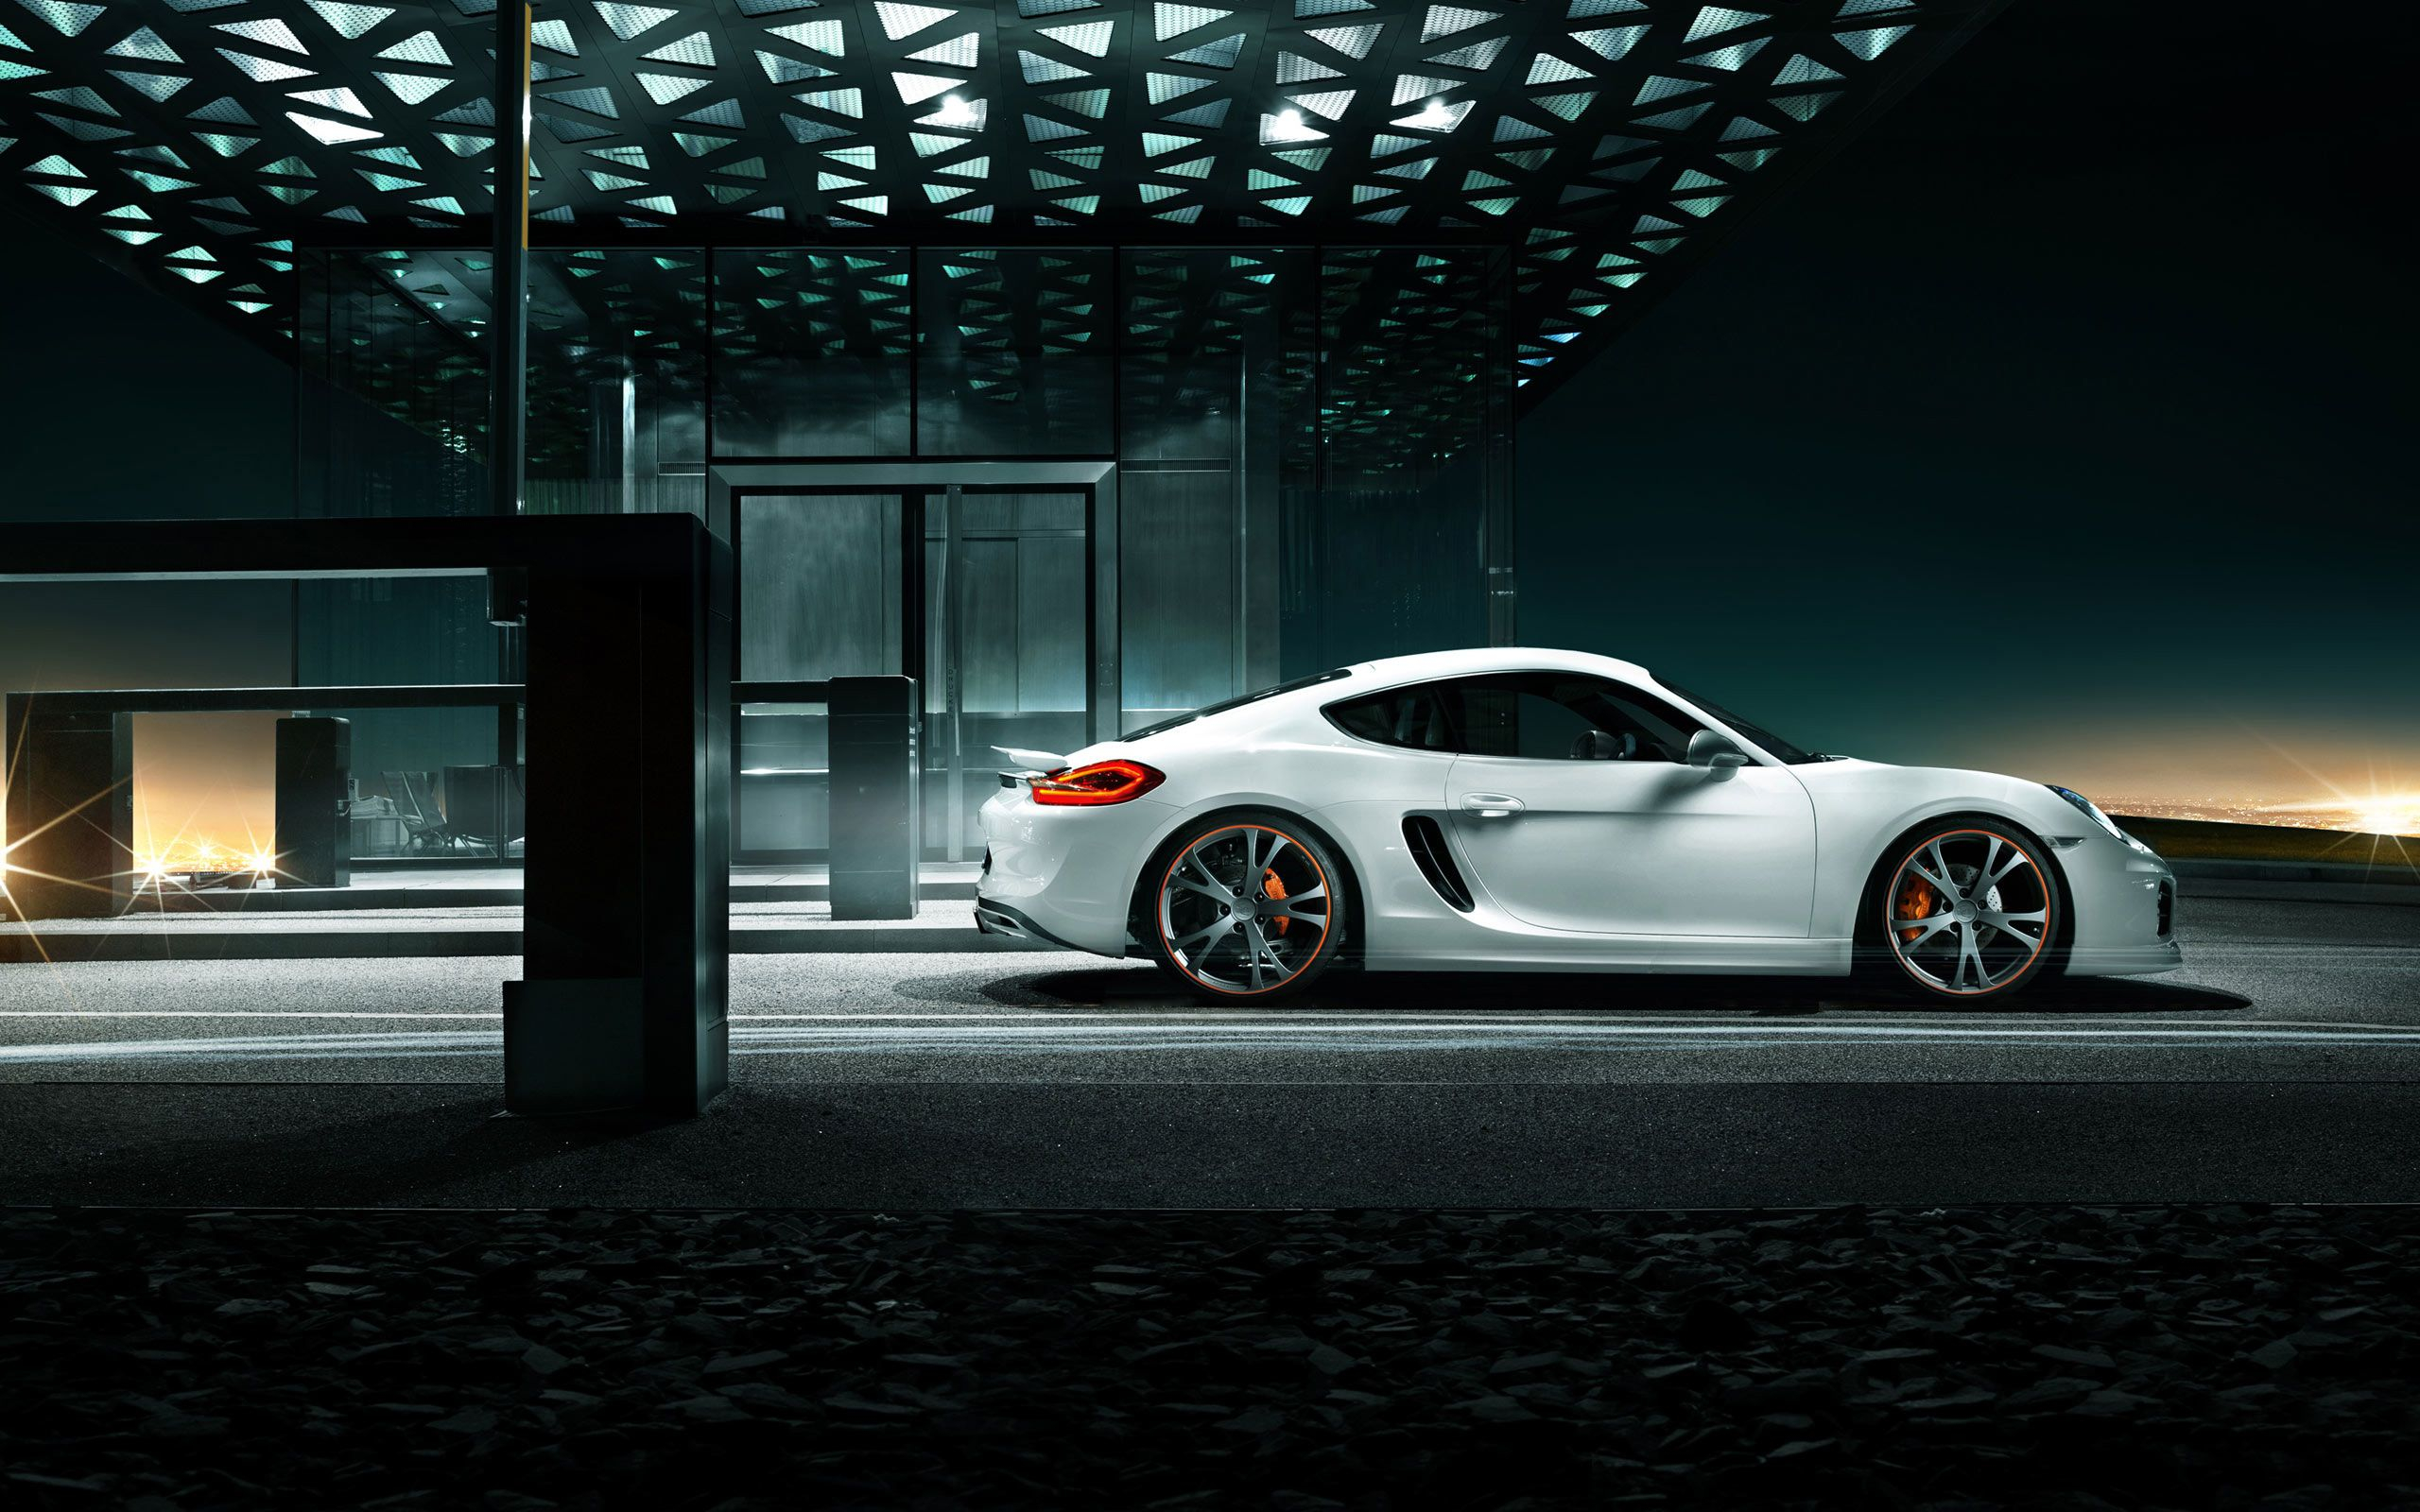 2560x1600 HD Porsche Wallpapers Top Free HD Porsche Backgrounds